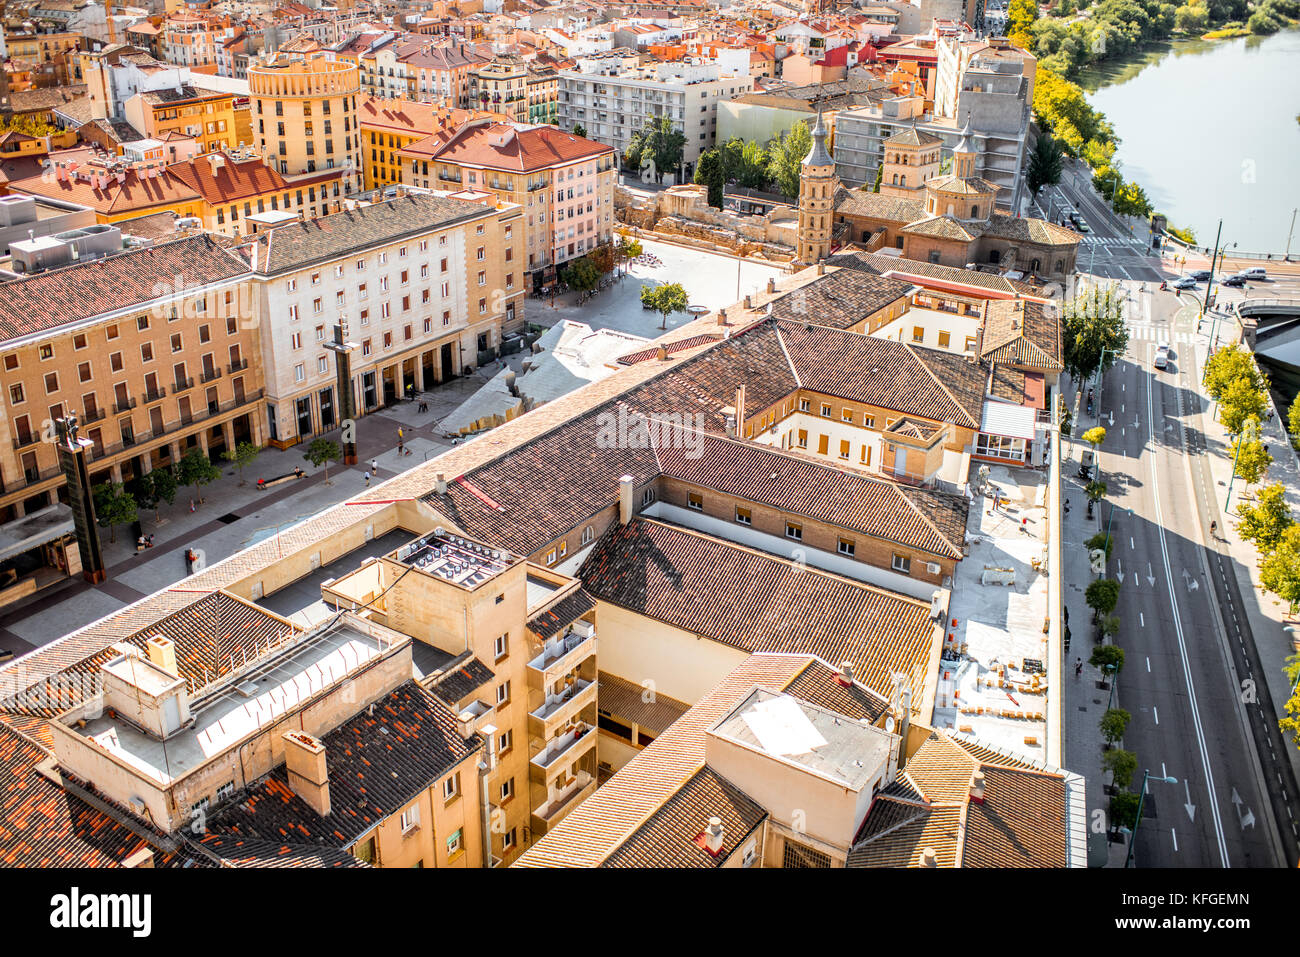 Zaragoza city in Spain Stock Photo